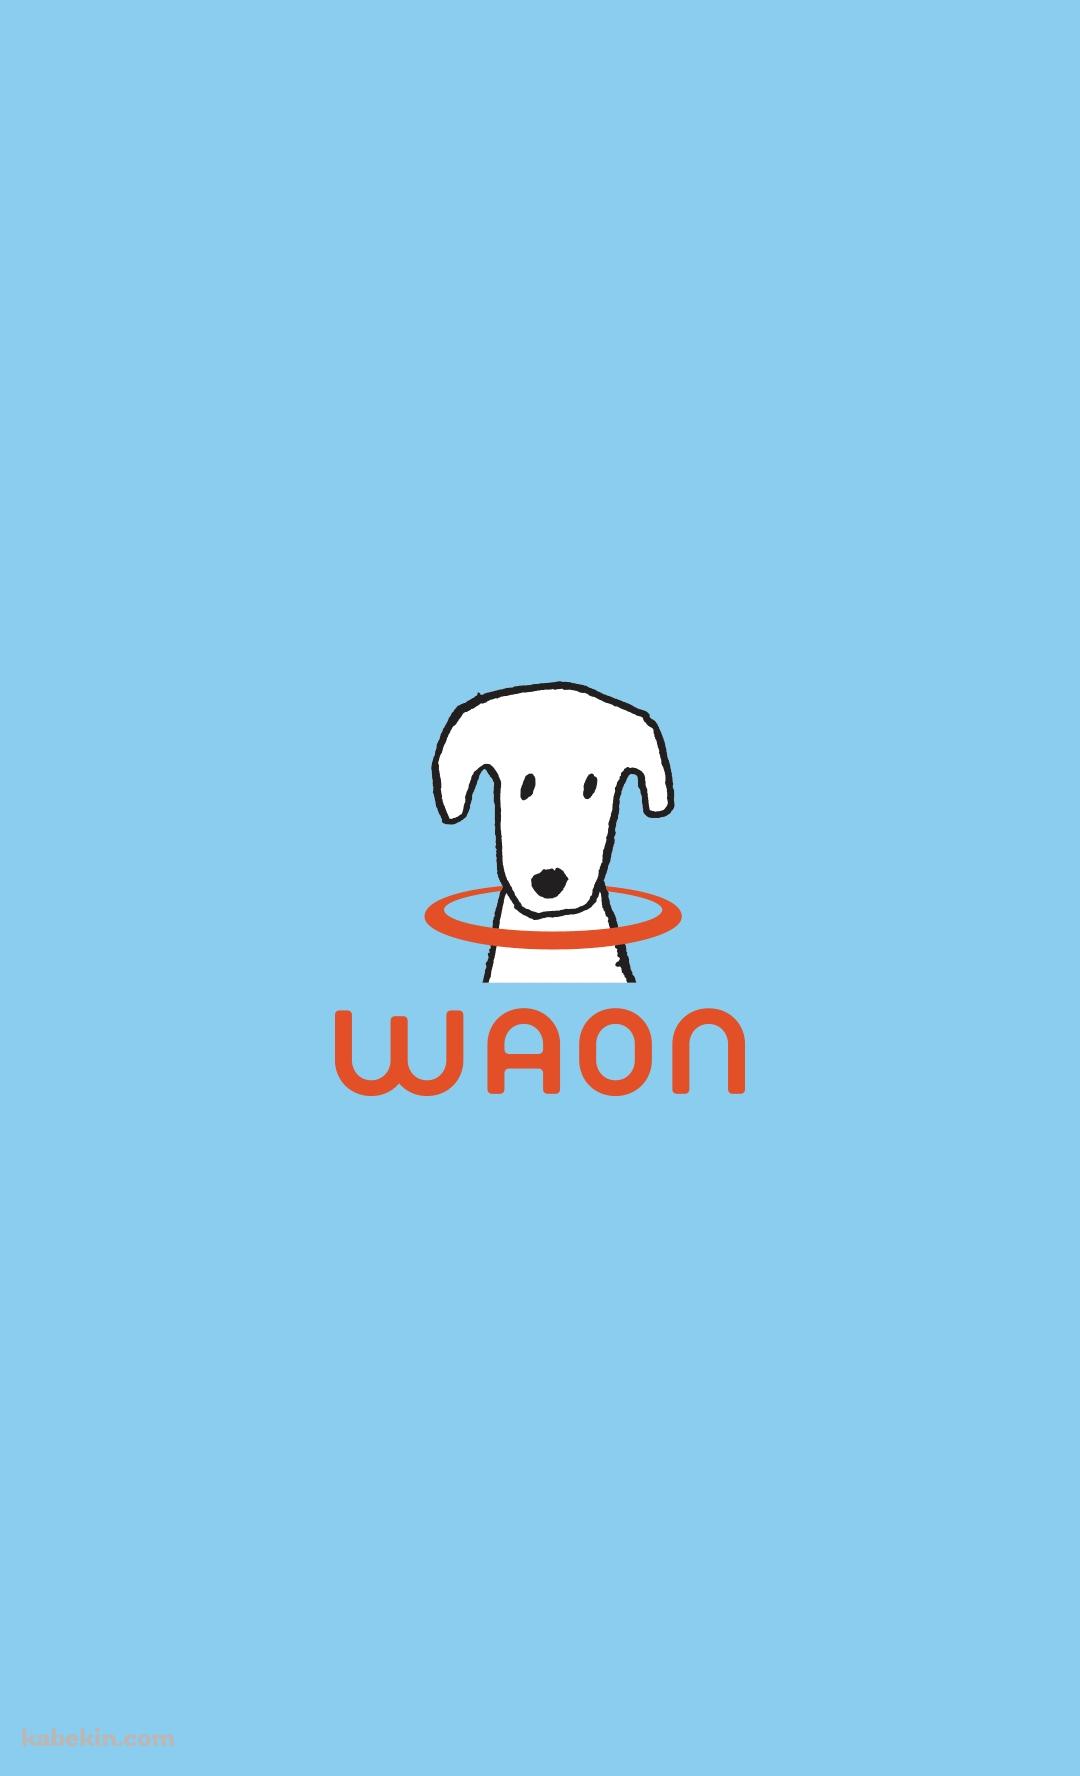 WAON / マイナポイントカード / 犬のAndroidの壁紙(1080px x 1776px) スマホ用